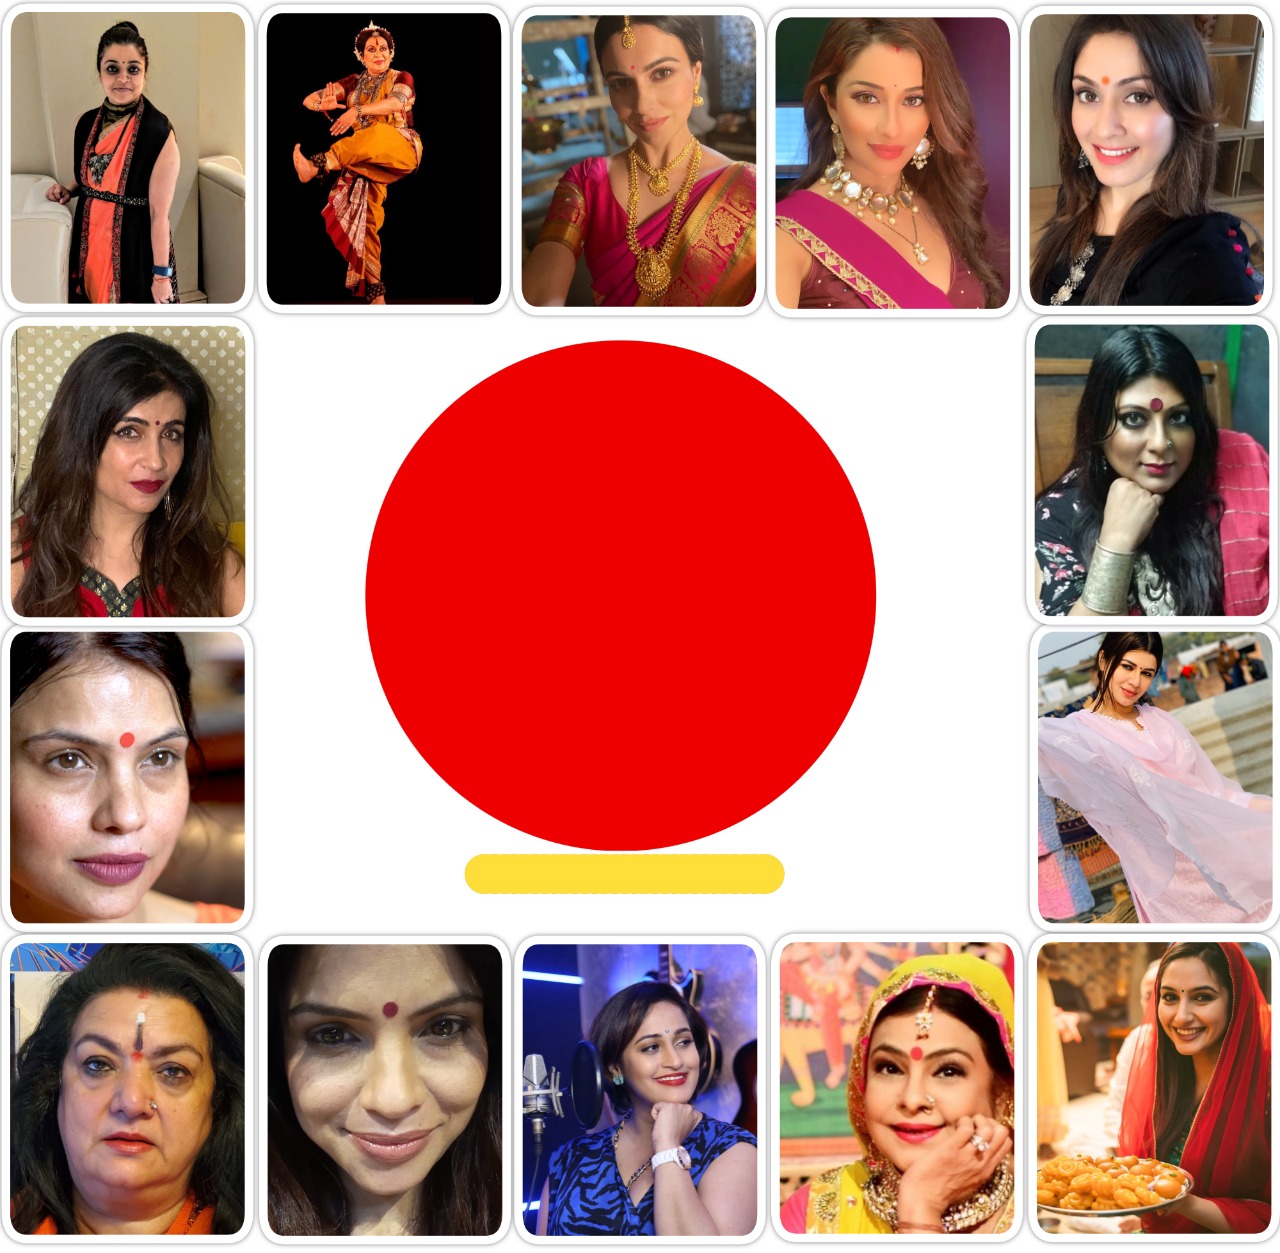 Global Music video dots World Bindi Day to celebrate womanhood